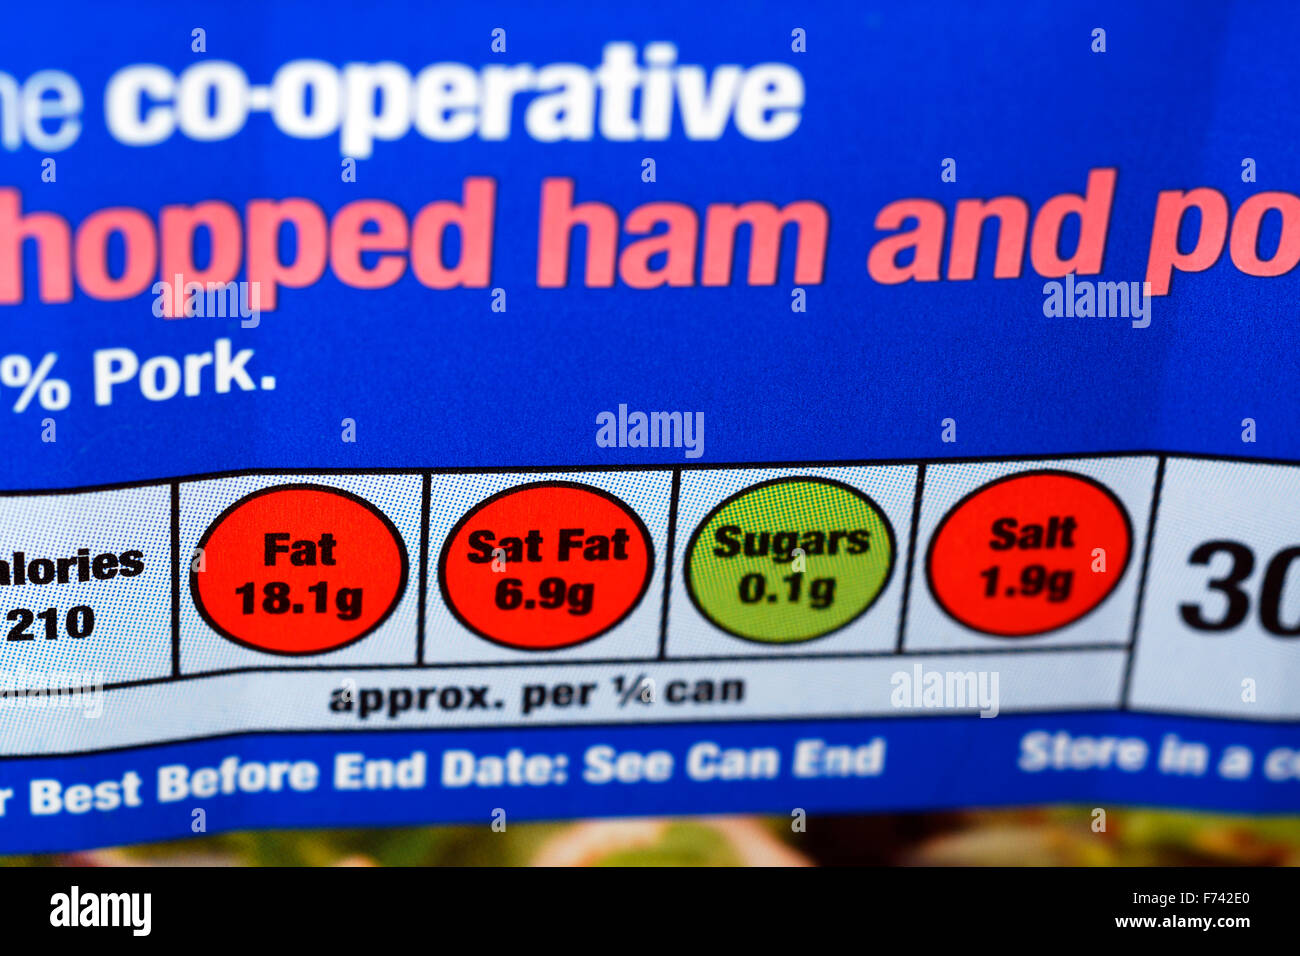 Una lattina di cooperativa di prosciutto tritato e la carne di maiale che mostra semaforo simboli Foto Stock